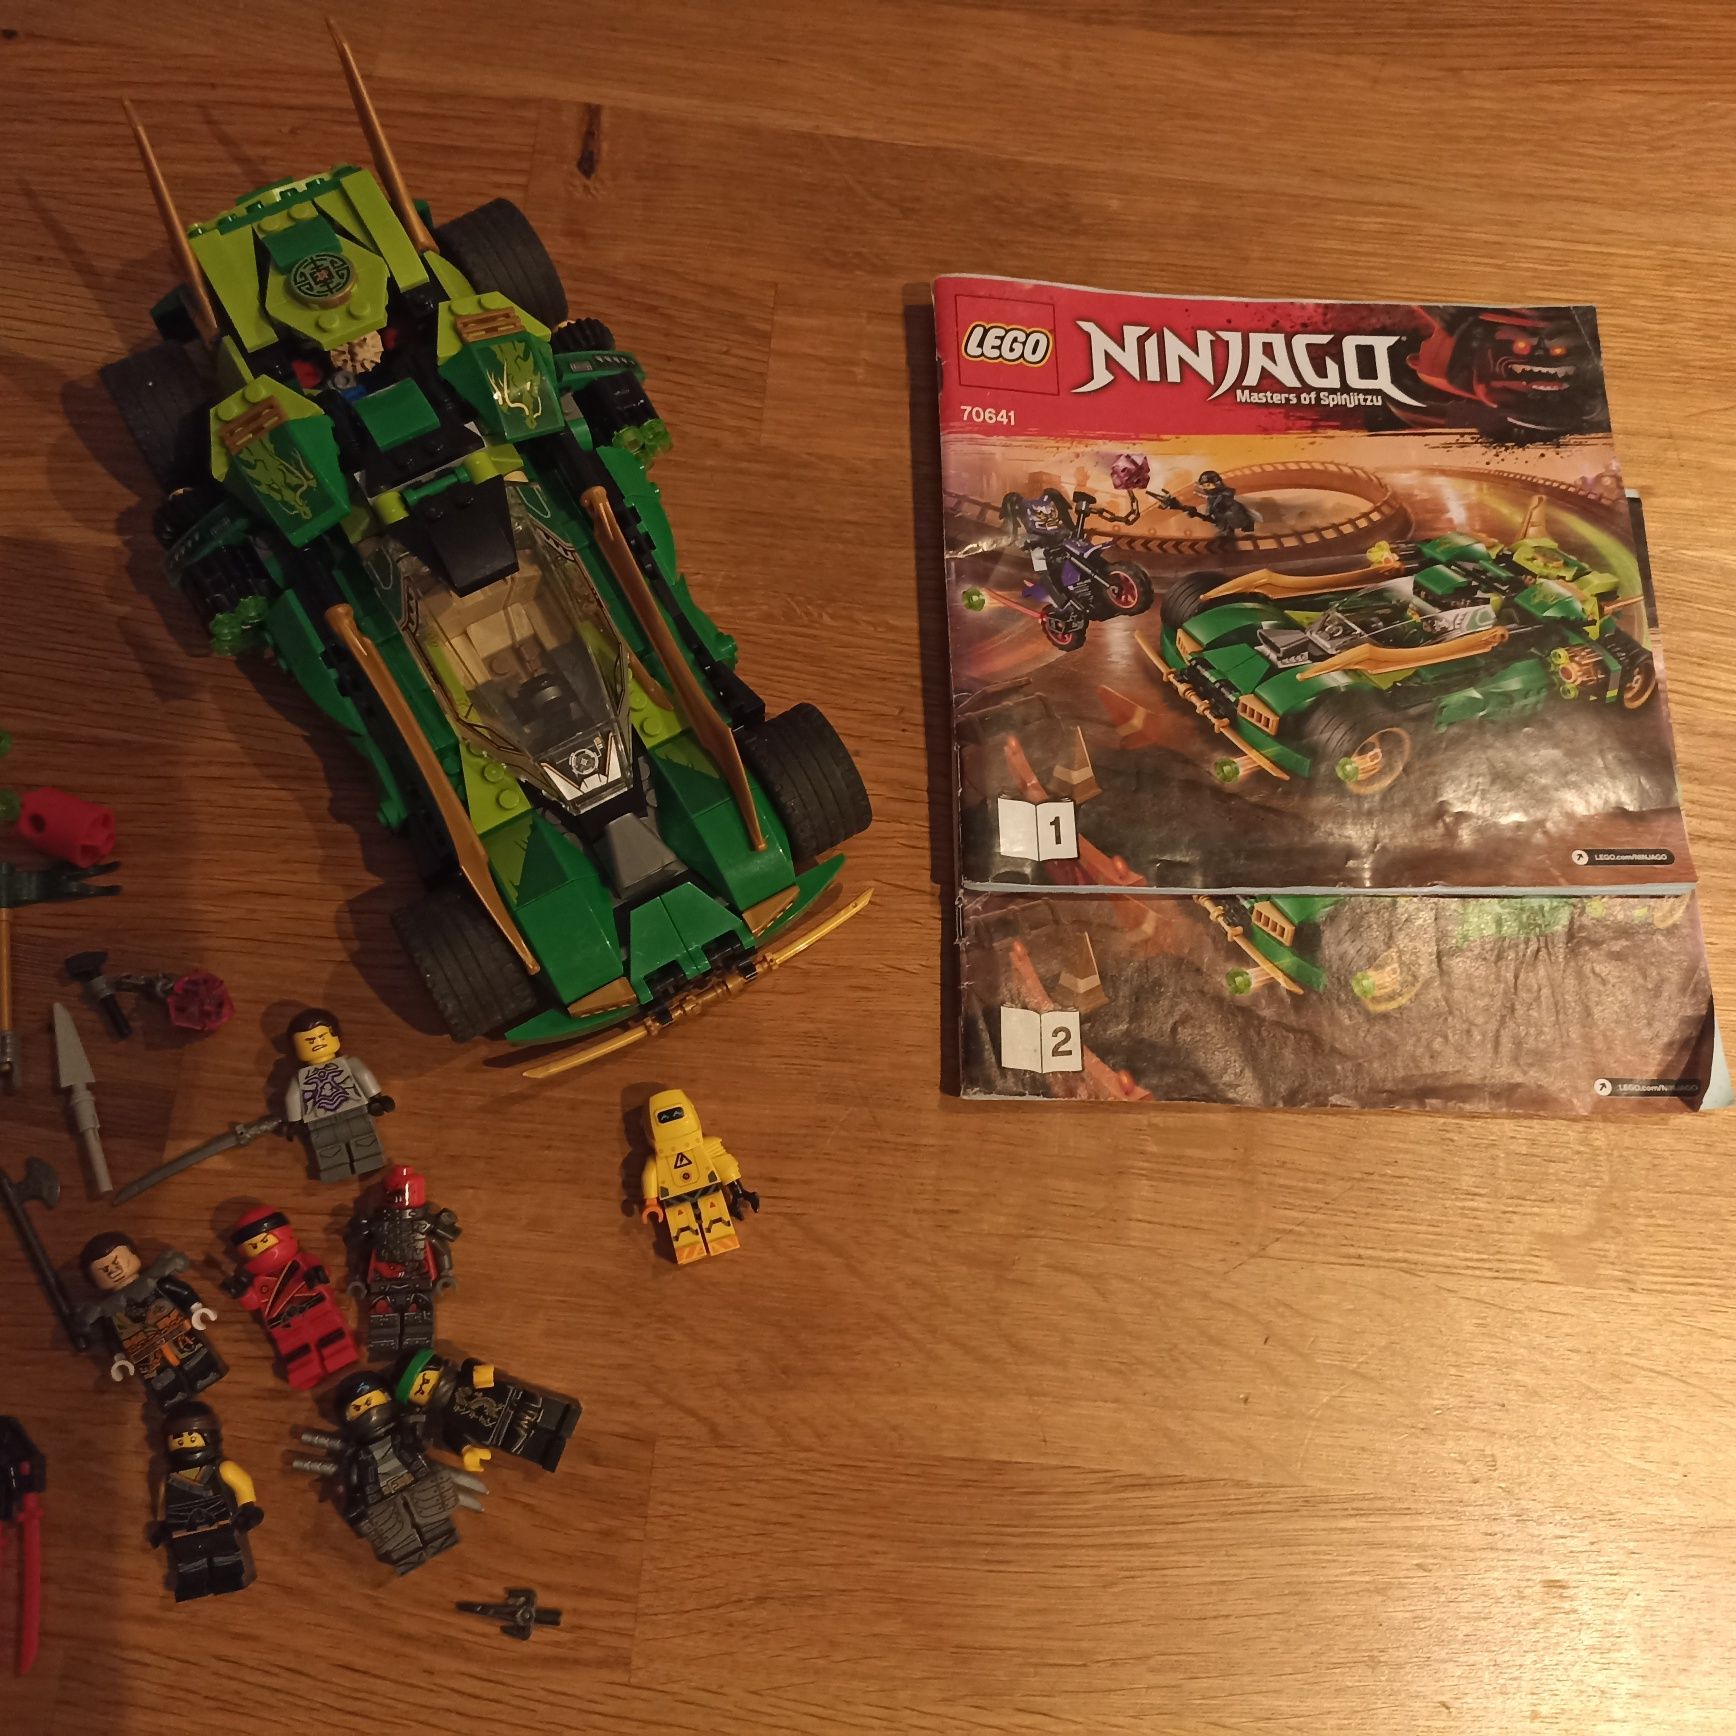 Lego Ninjago 70641